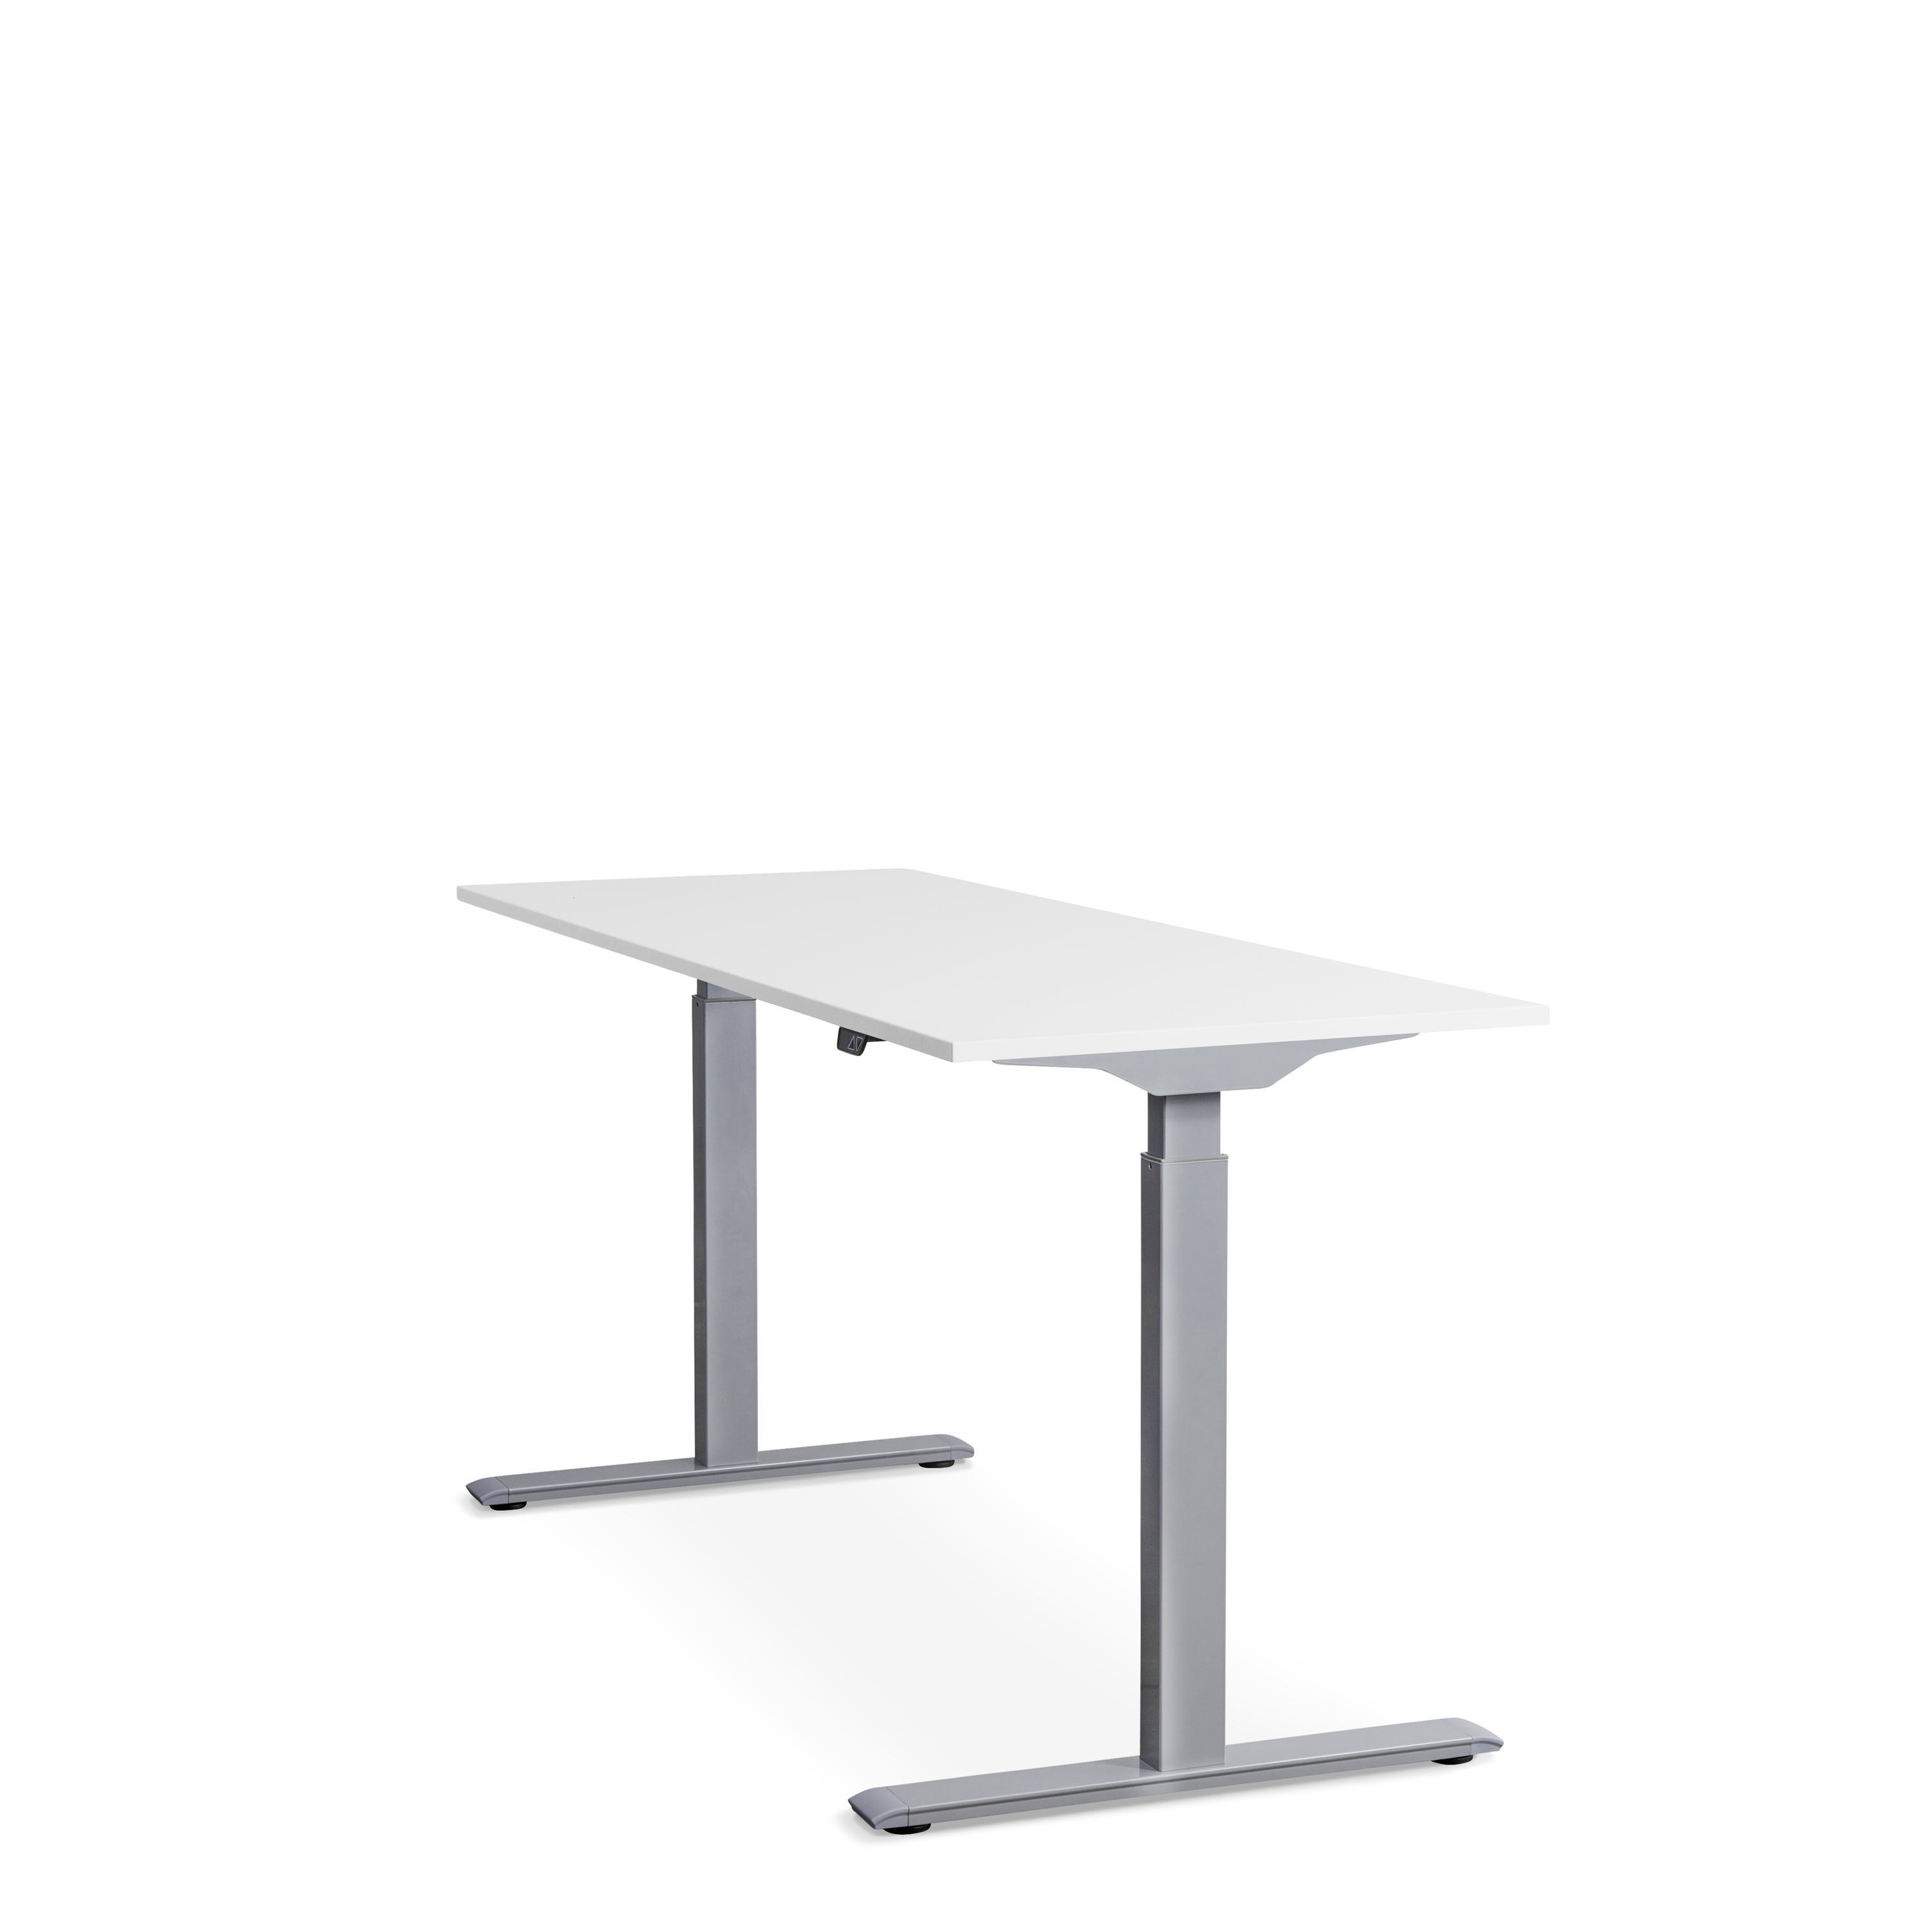 160x60 Tischgestell: Steh-Sitz elektronisch WRK21 Grau Tischplatte: höhenverstellbarer Schreibtisch, Weiß cm